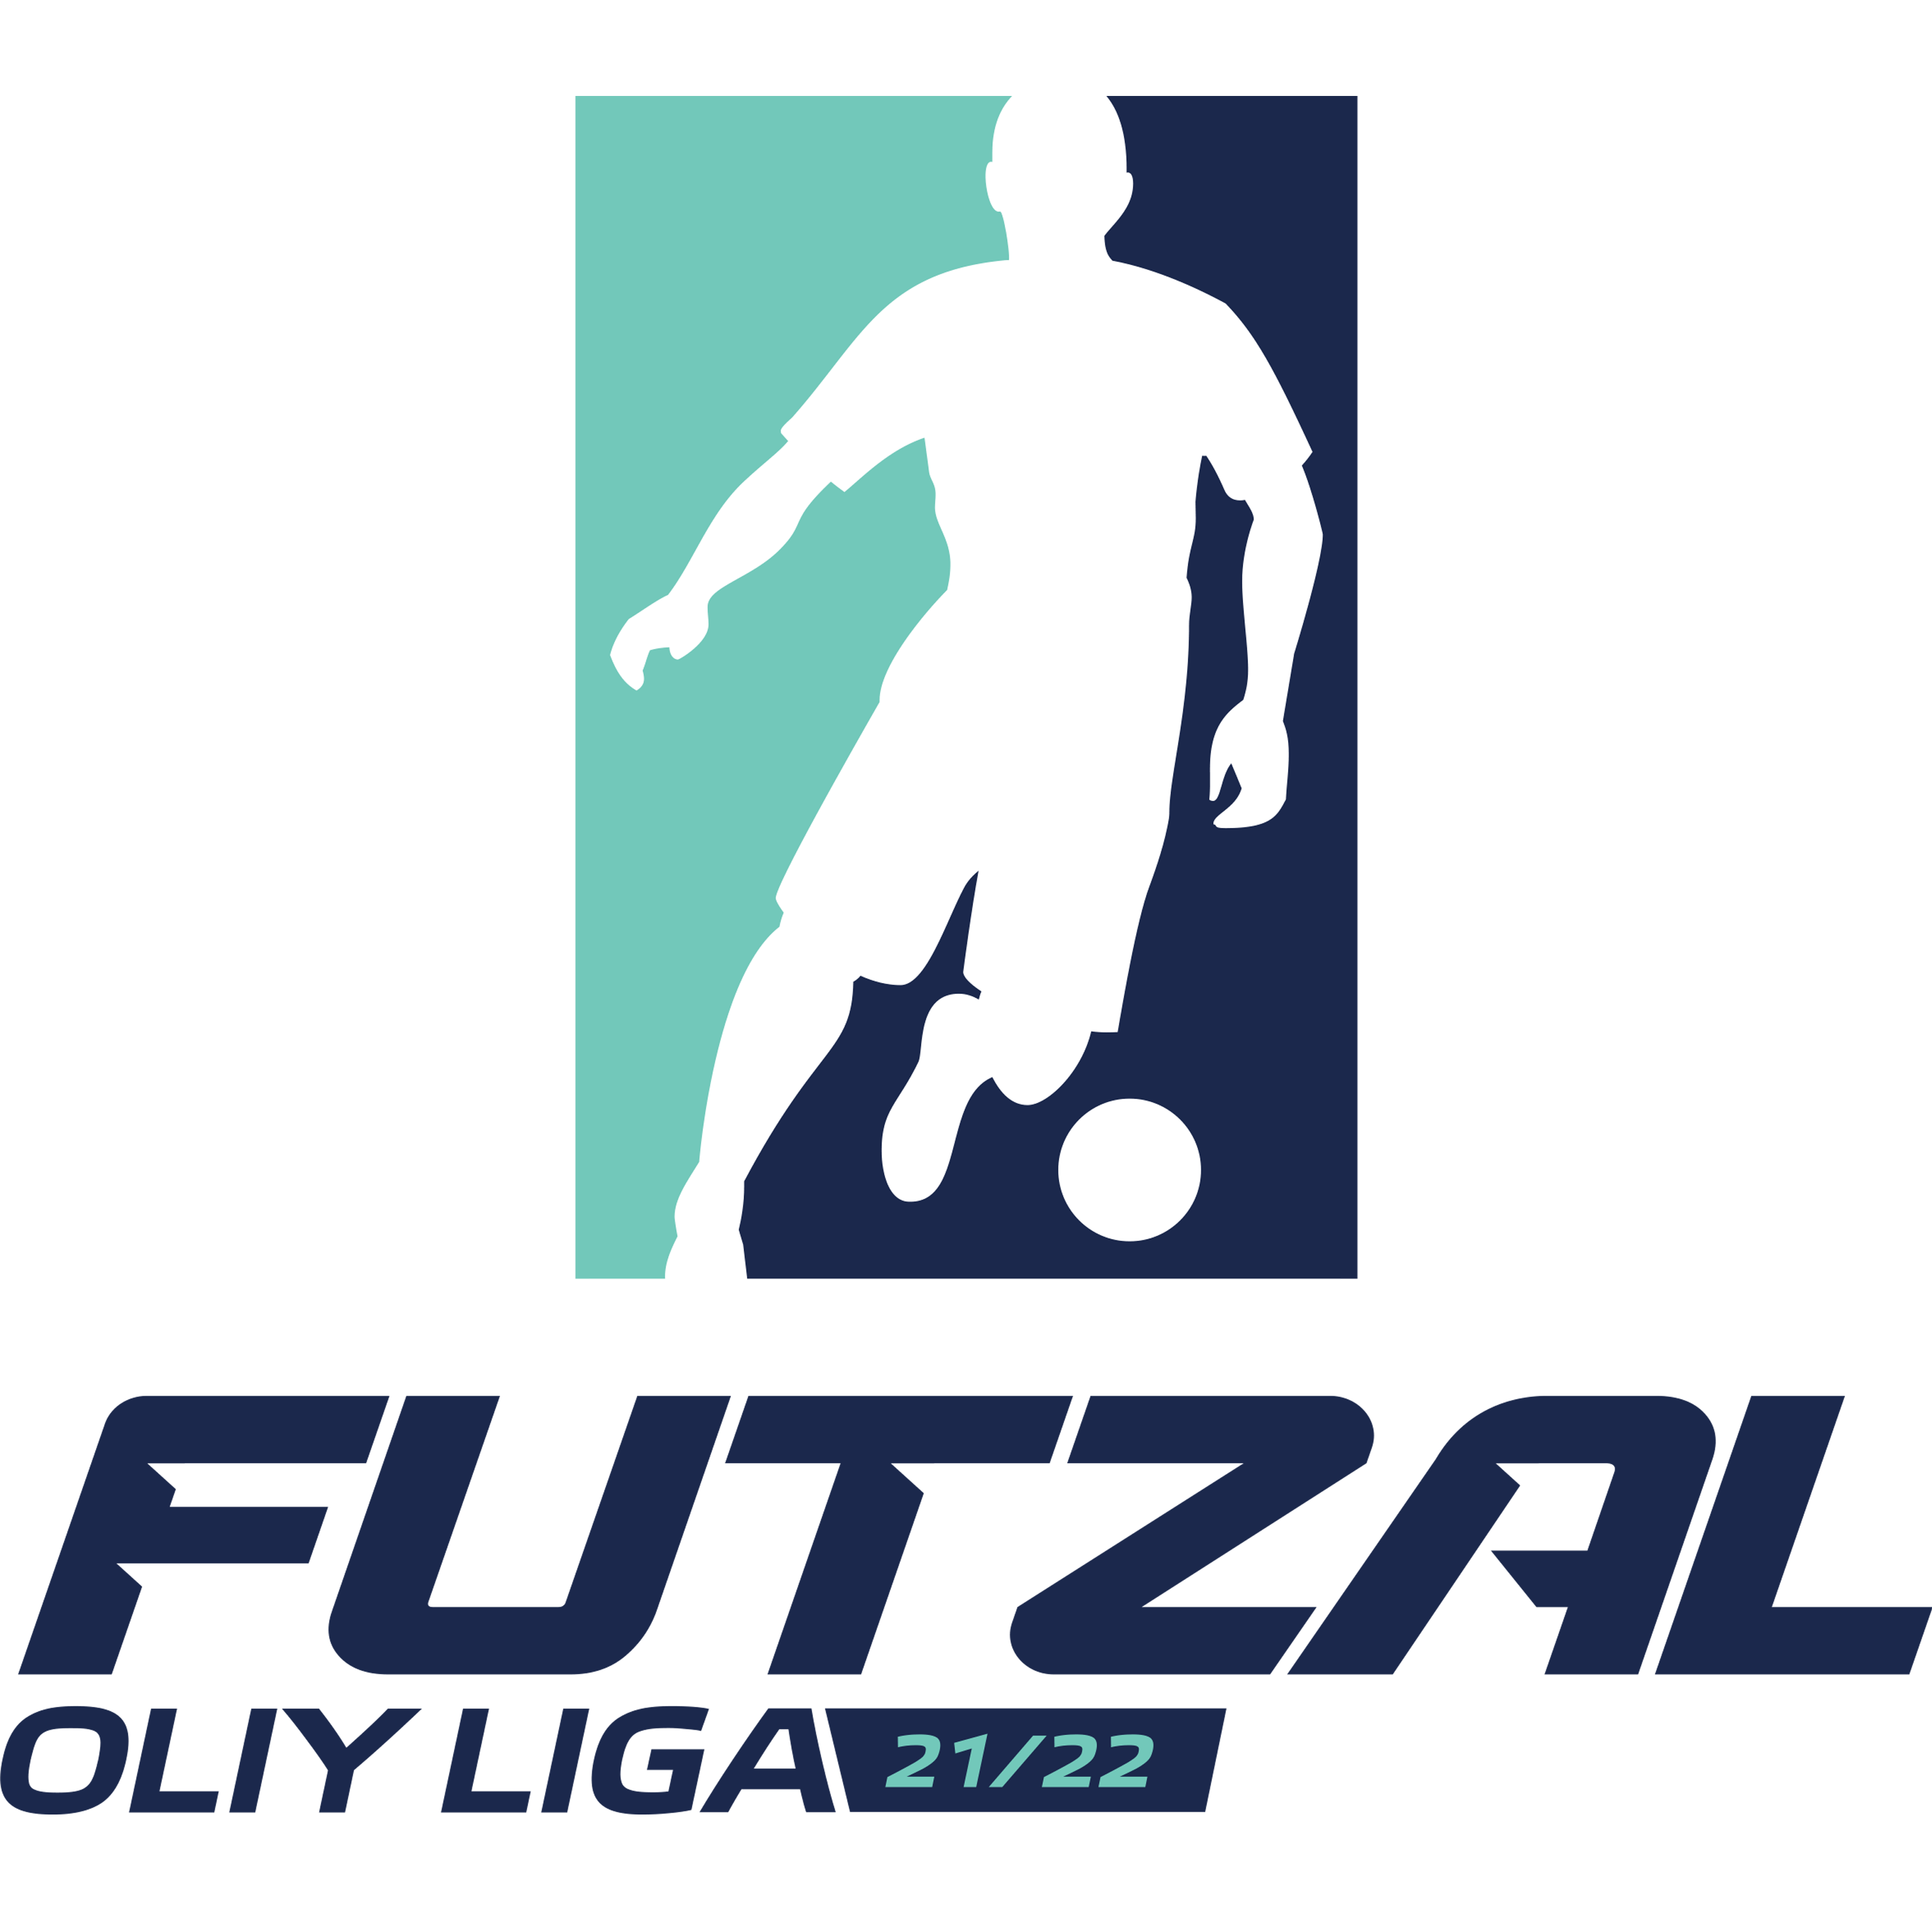 Oliy league F